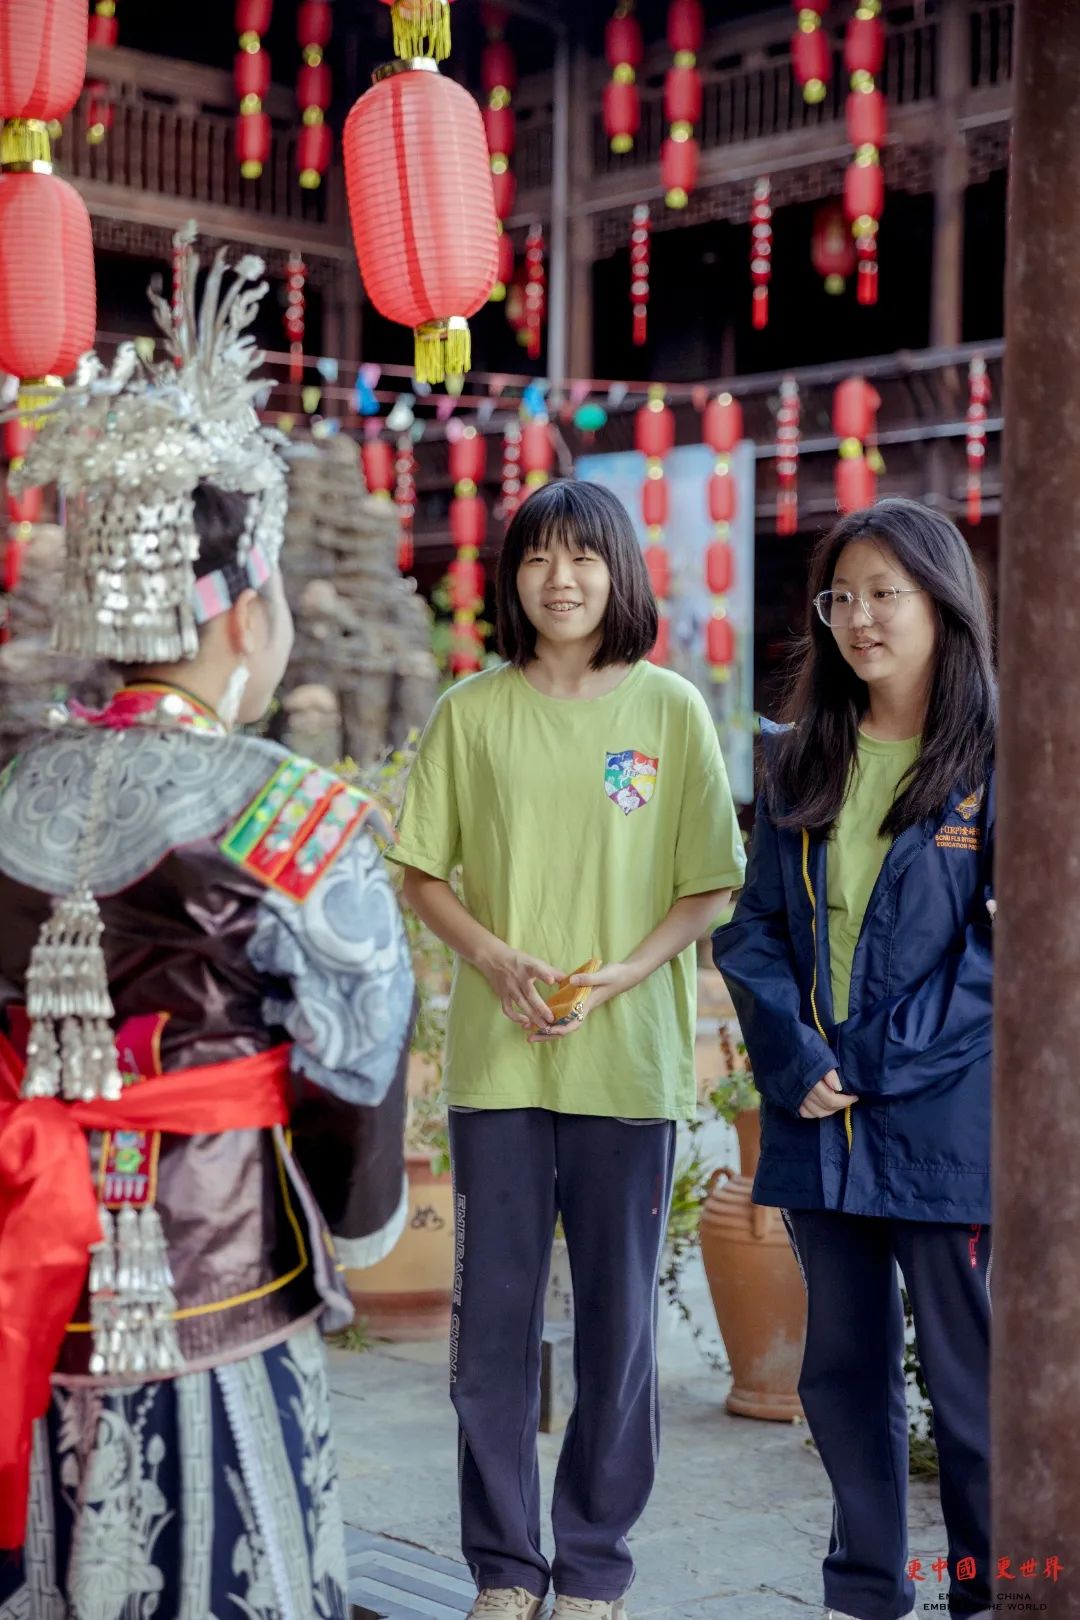 用英语讲述中国传统节日 | I-EP MYP 八年级探究项目展示